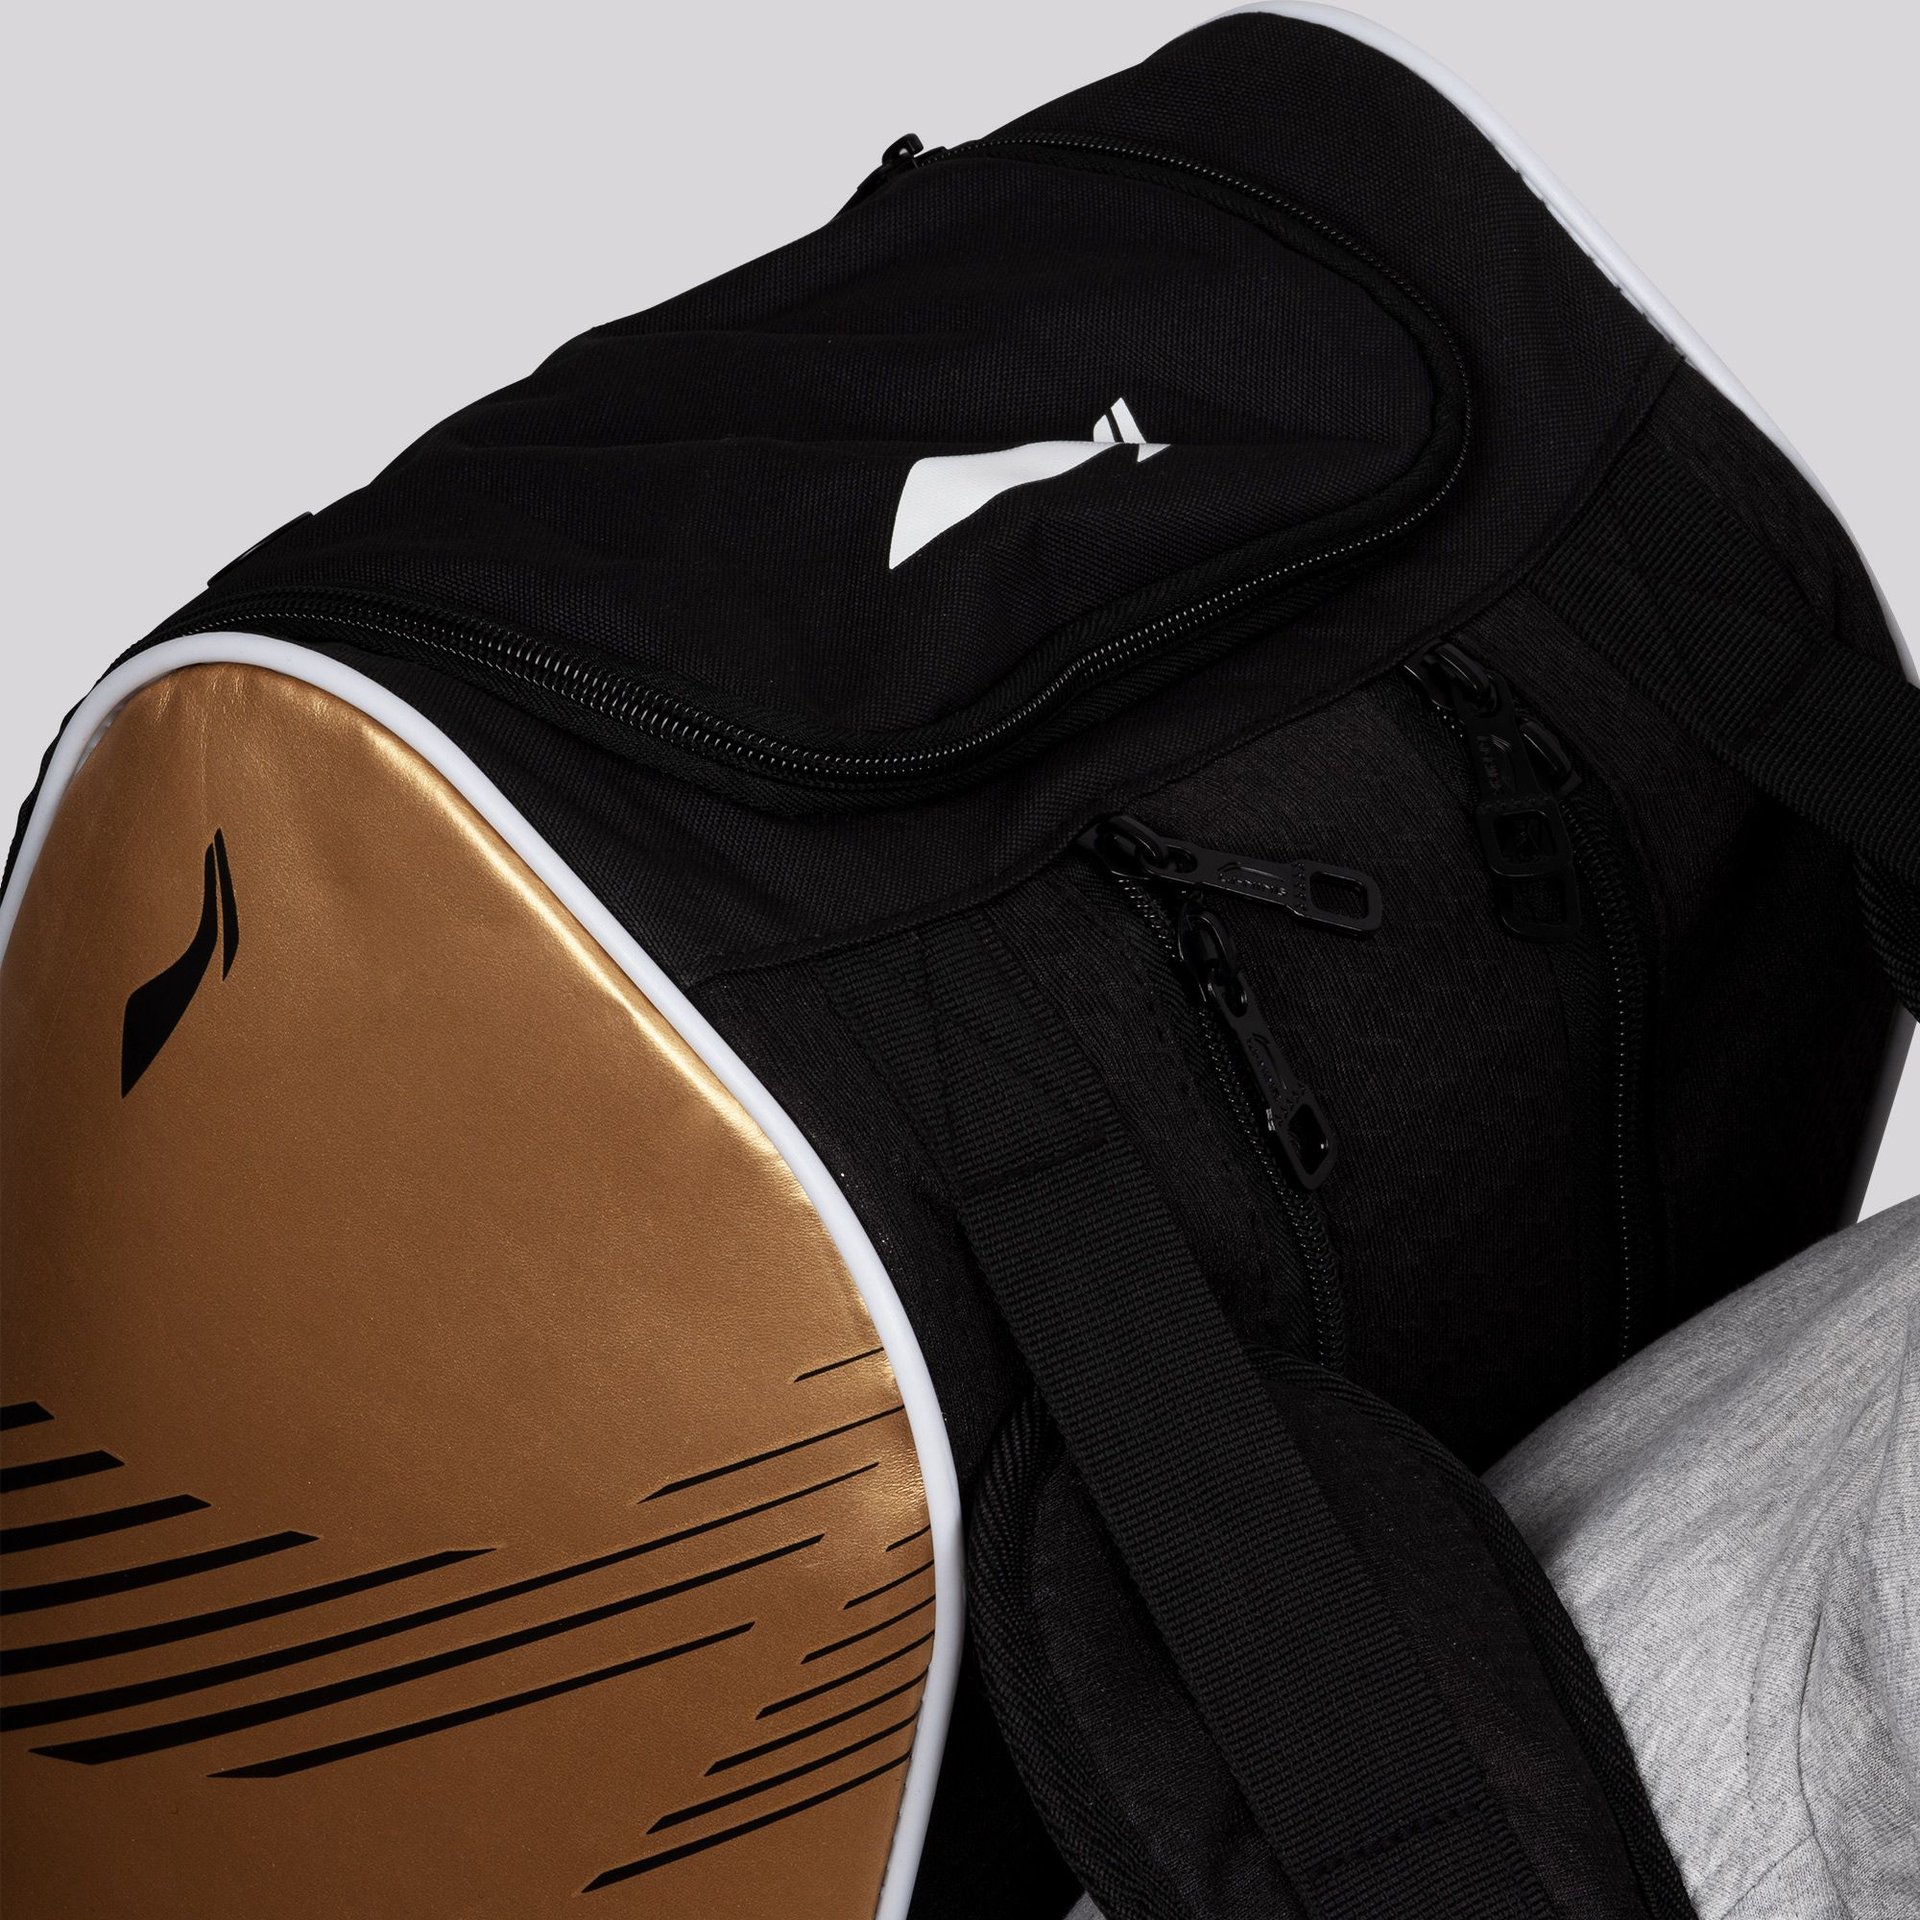 Parallel Badminton Kit Bag - Convenient Zippers